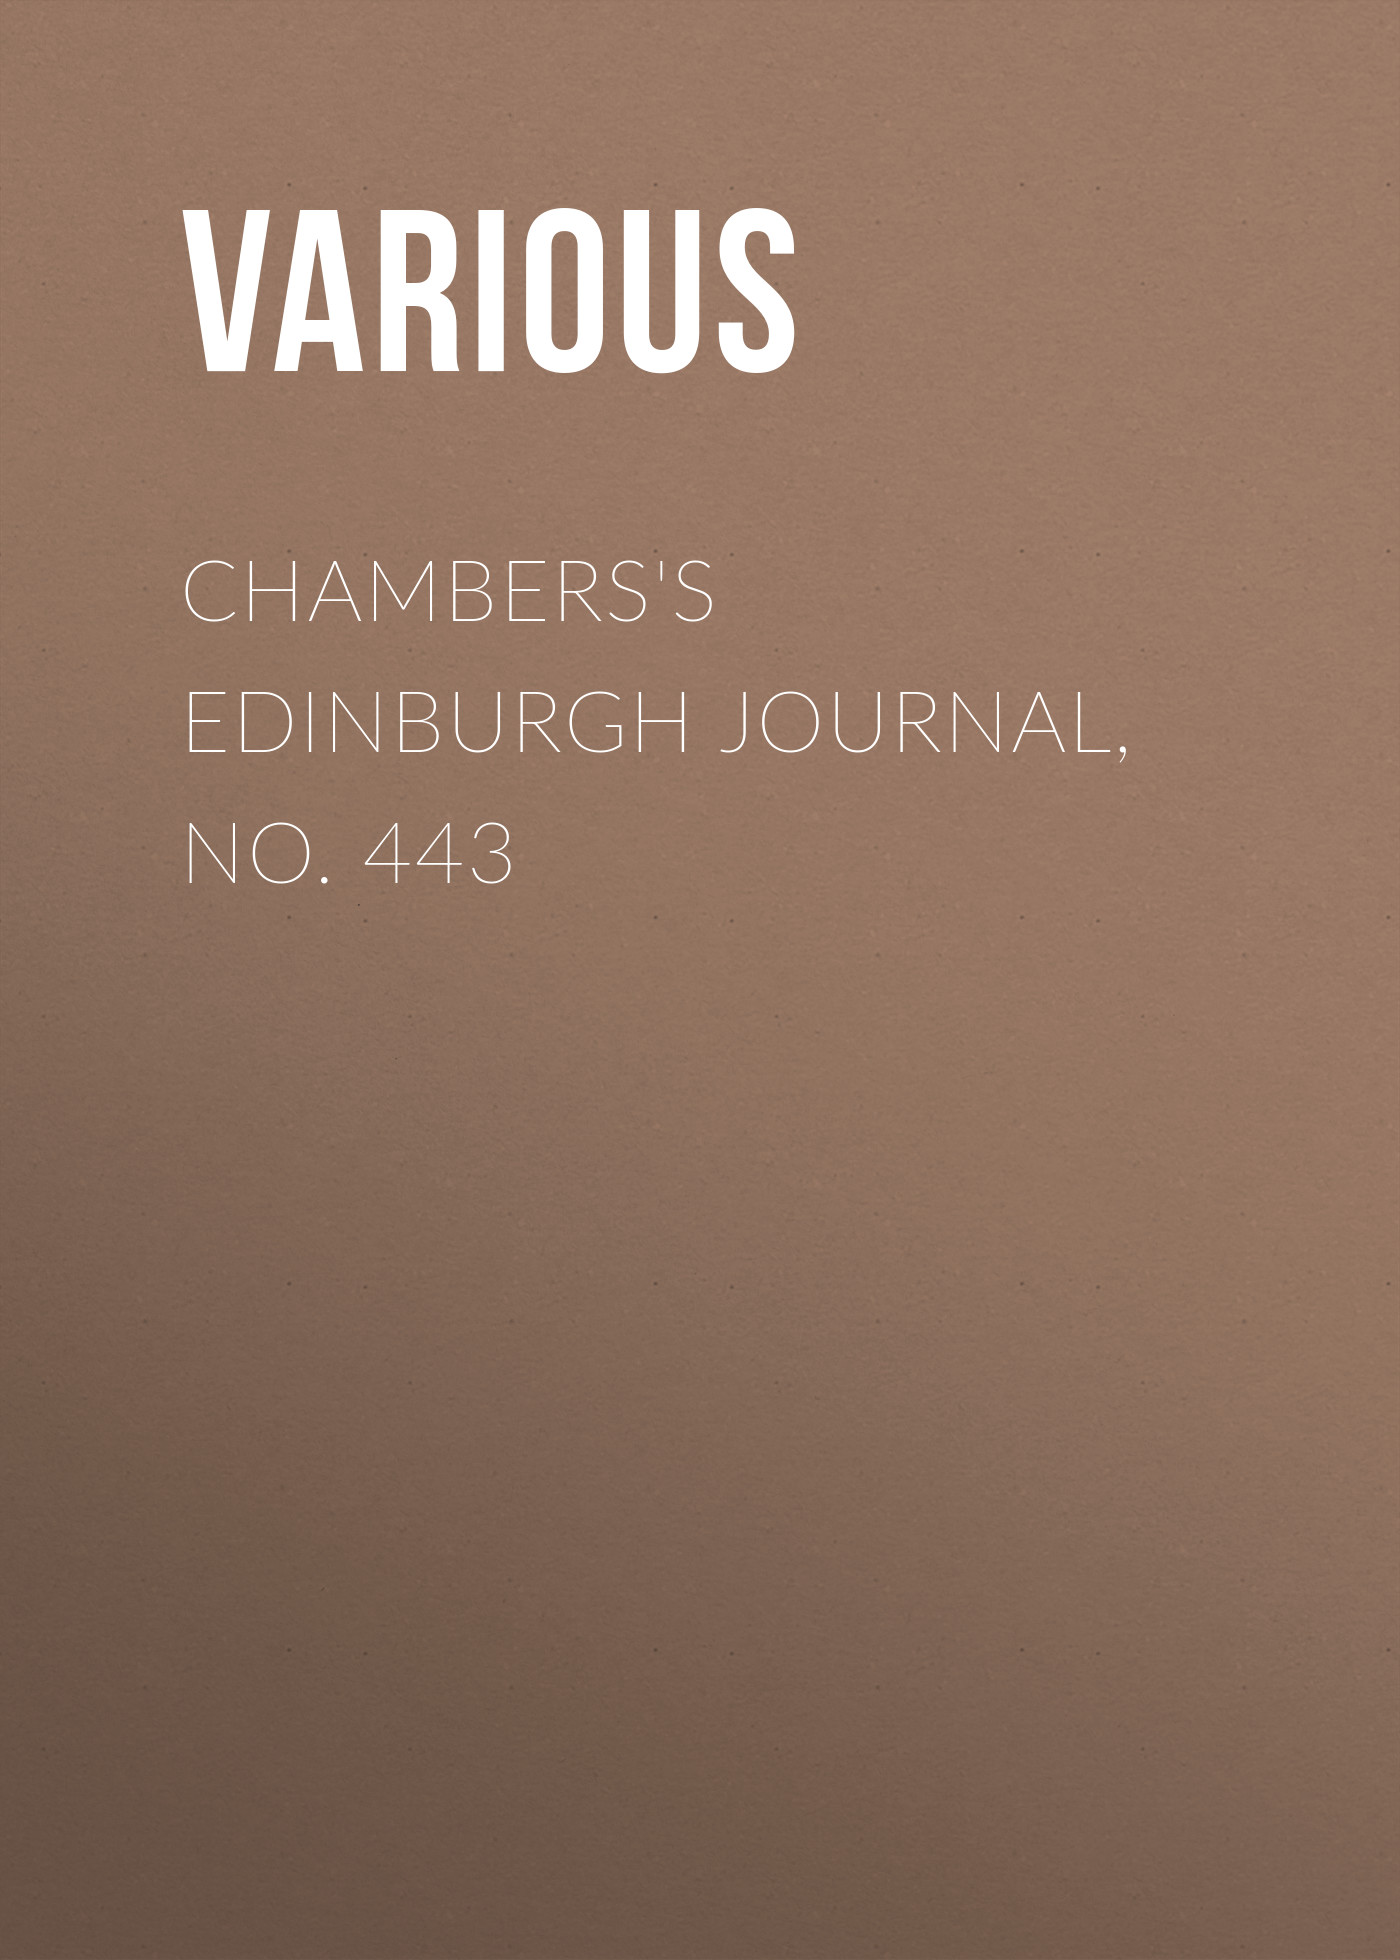 Various Chambers's Edinburgh Journal, No. 443